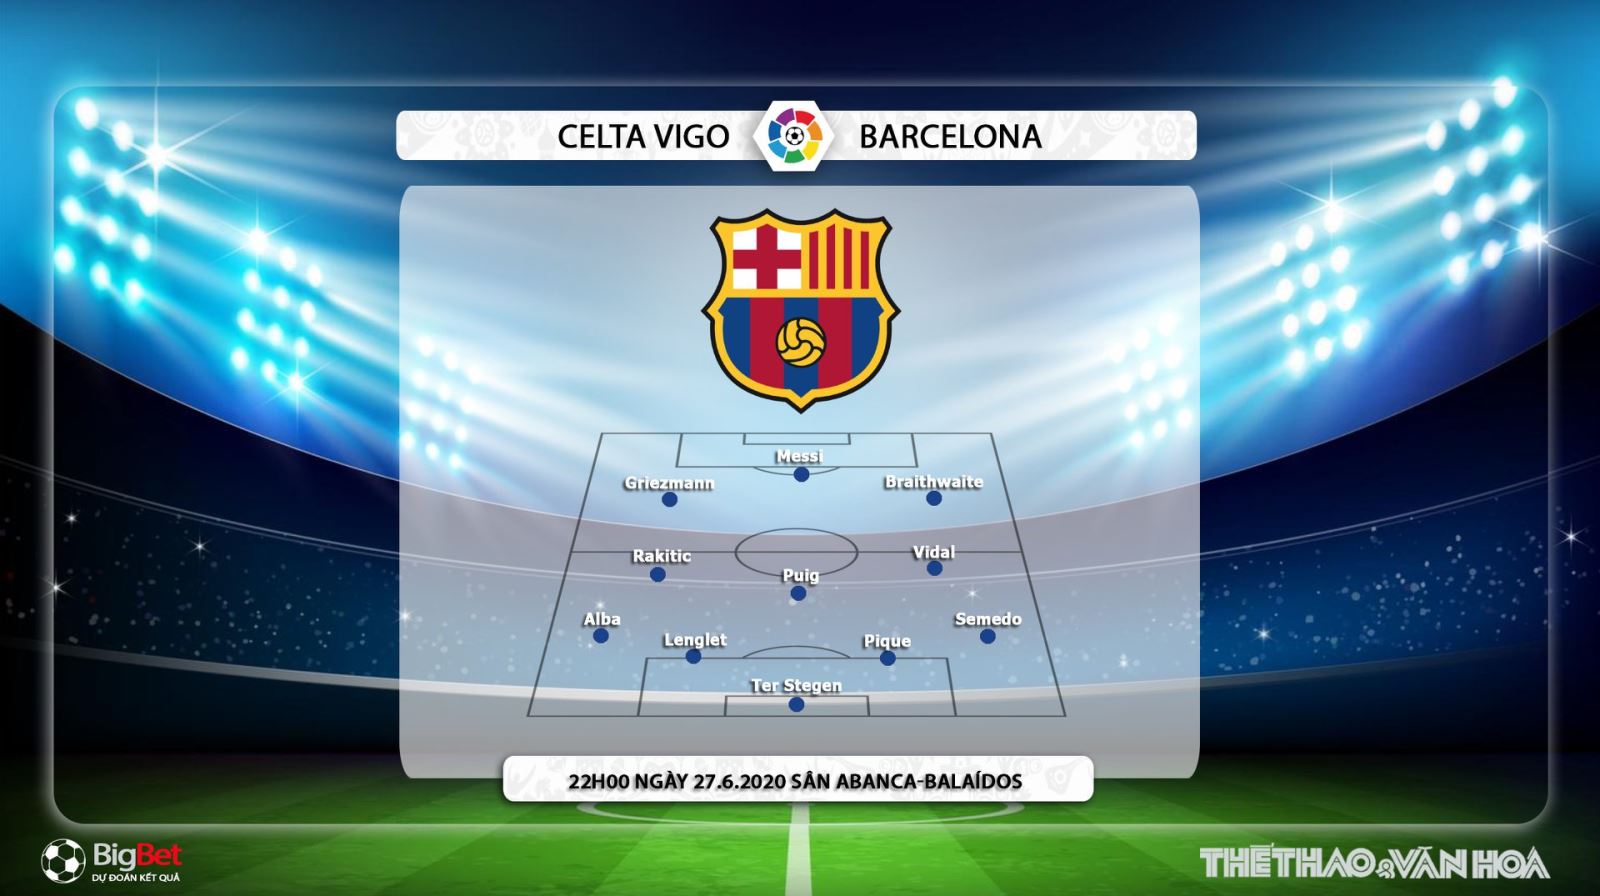 Celta Vigo vs Barcelona, Barcelona, Celta Vigo, trực tiếp bóng đá, bóng đá, lịch thi đấu, nhận định bóng đá, kèo bóng đá